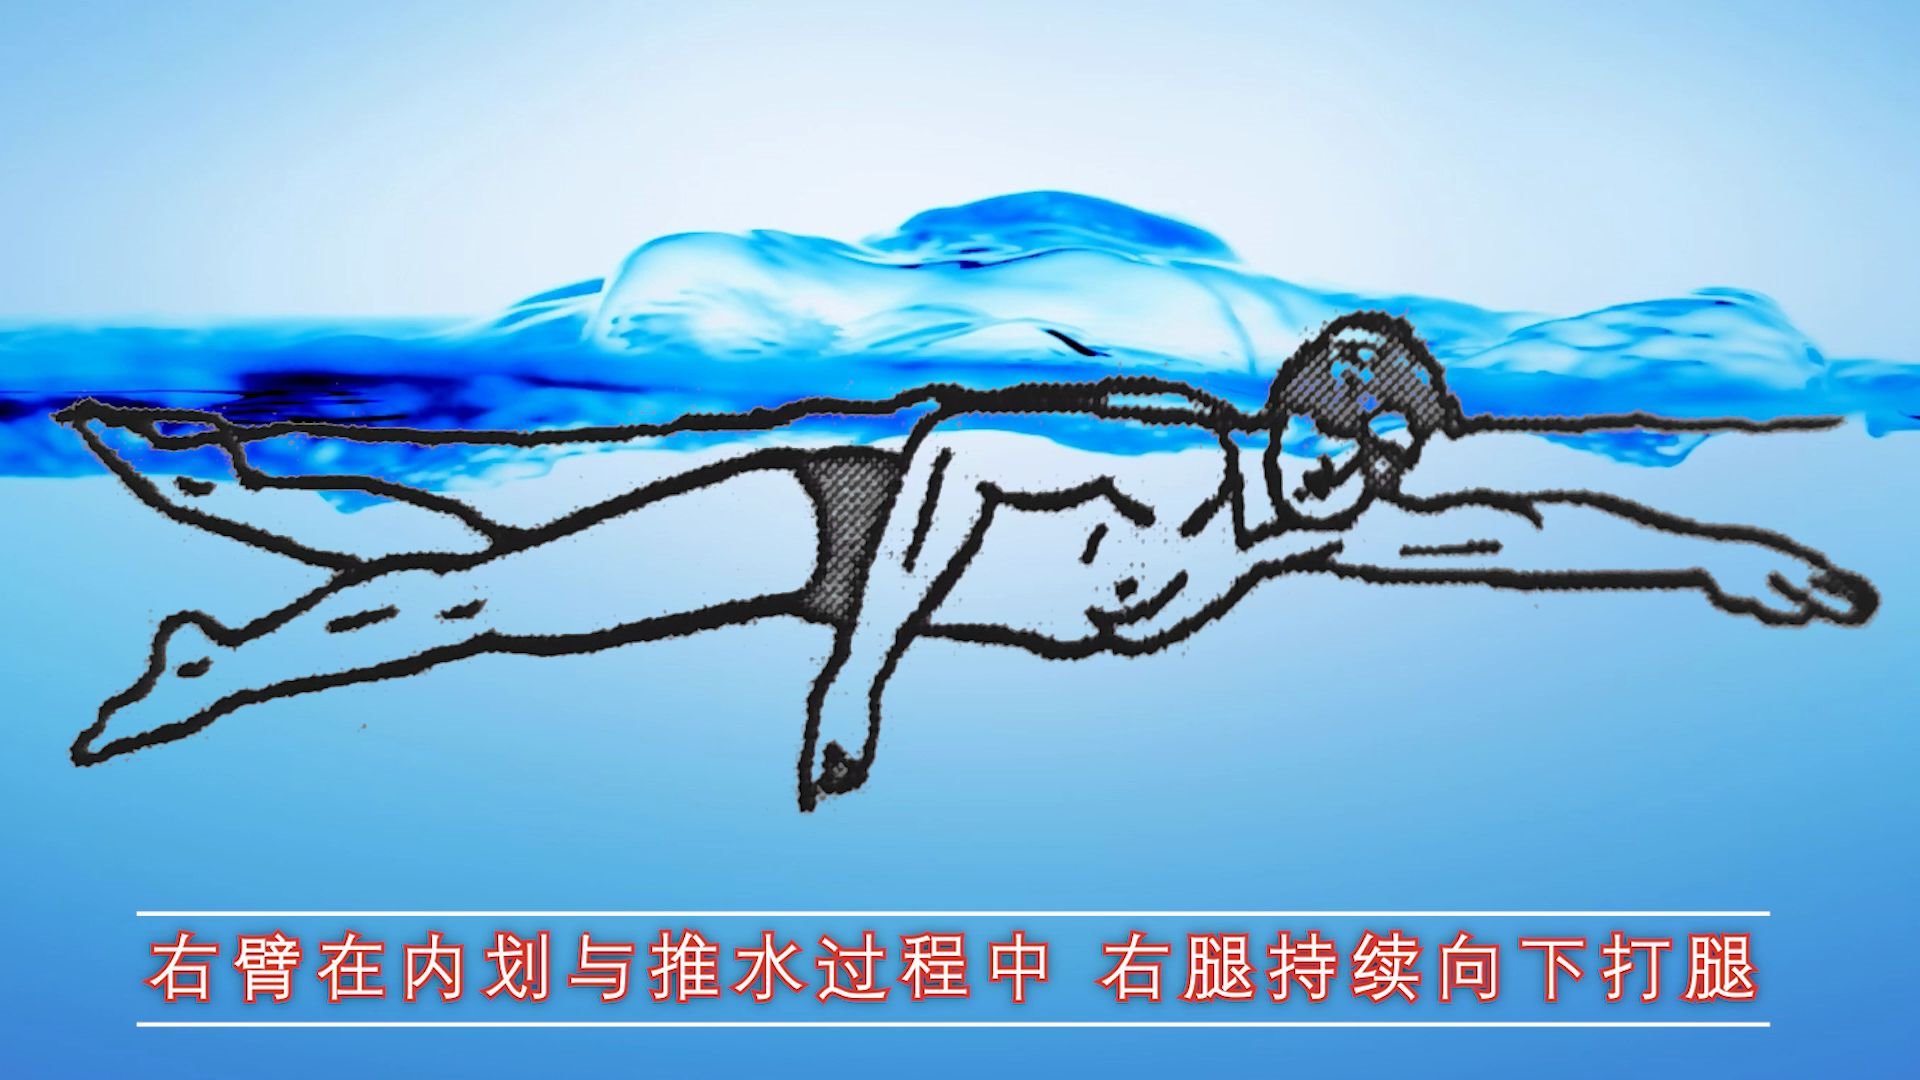 中游体育:六张动图带你了解自由泳两次腿打腿时机